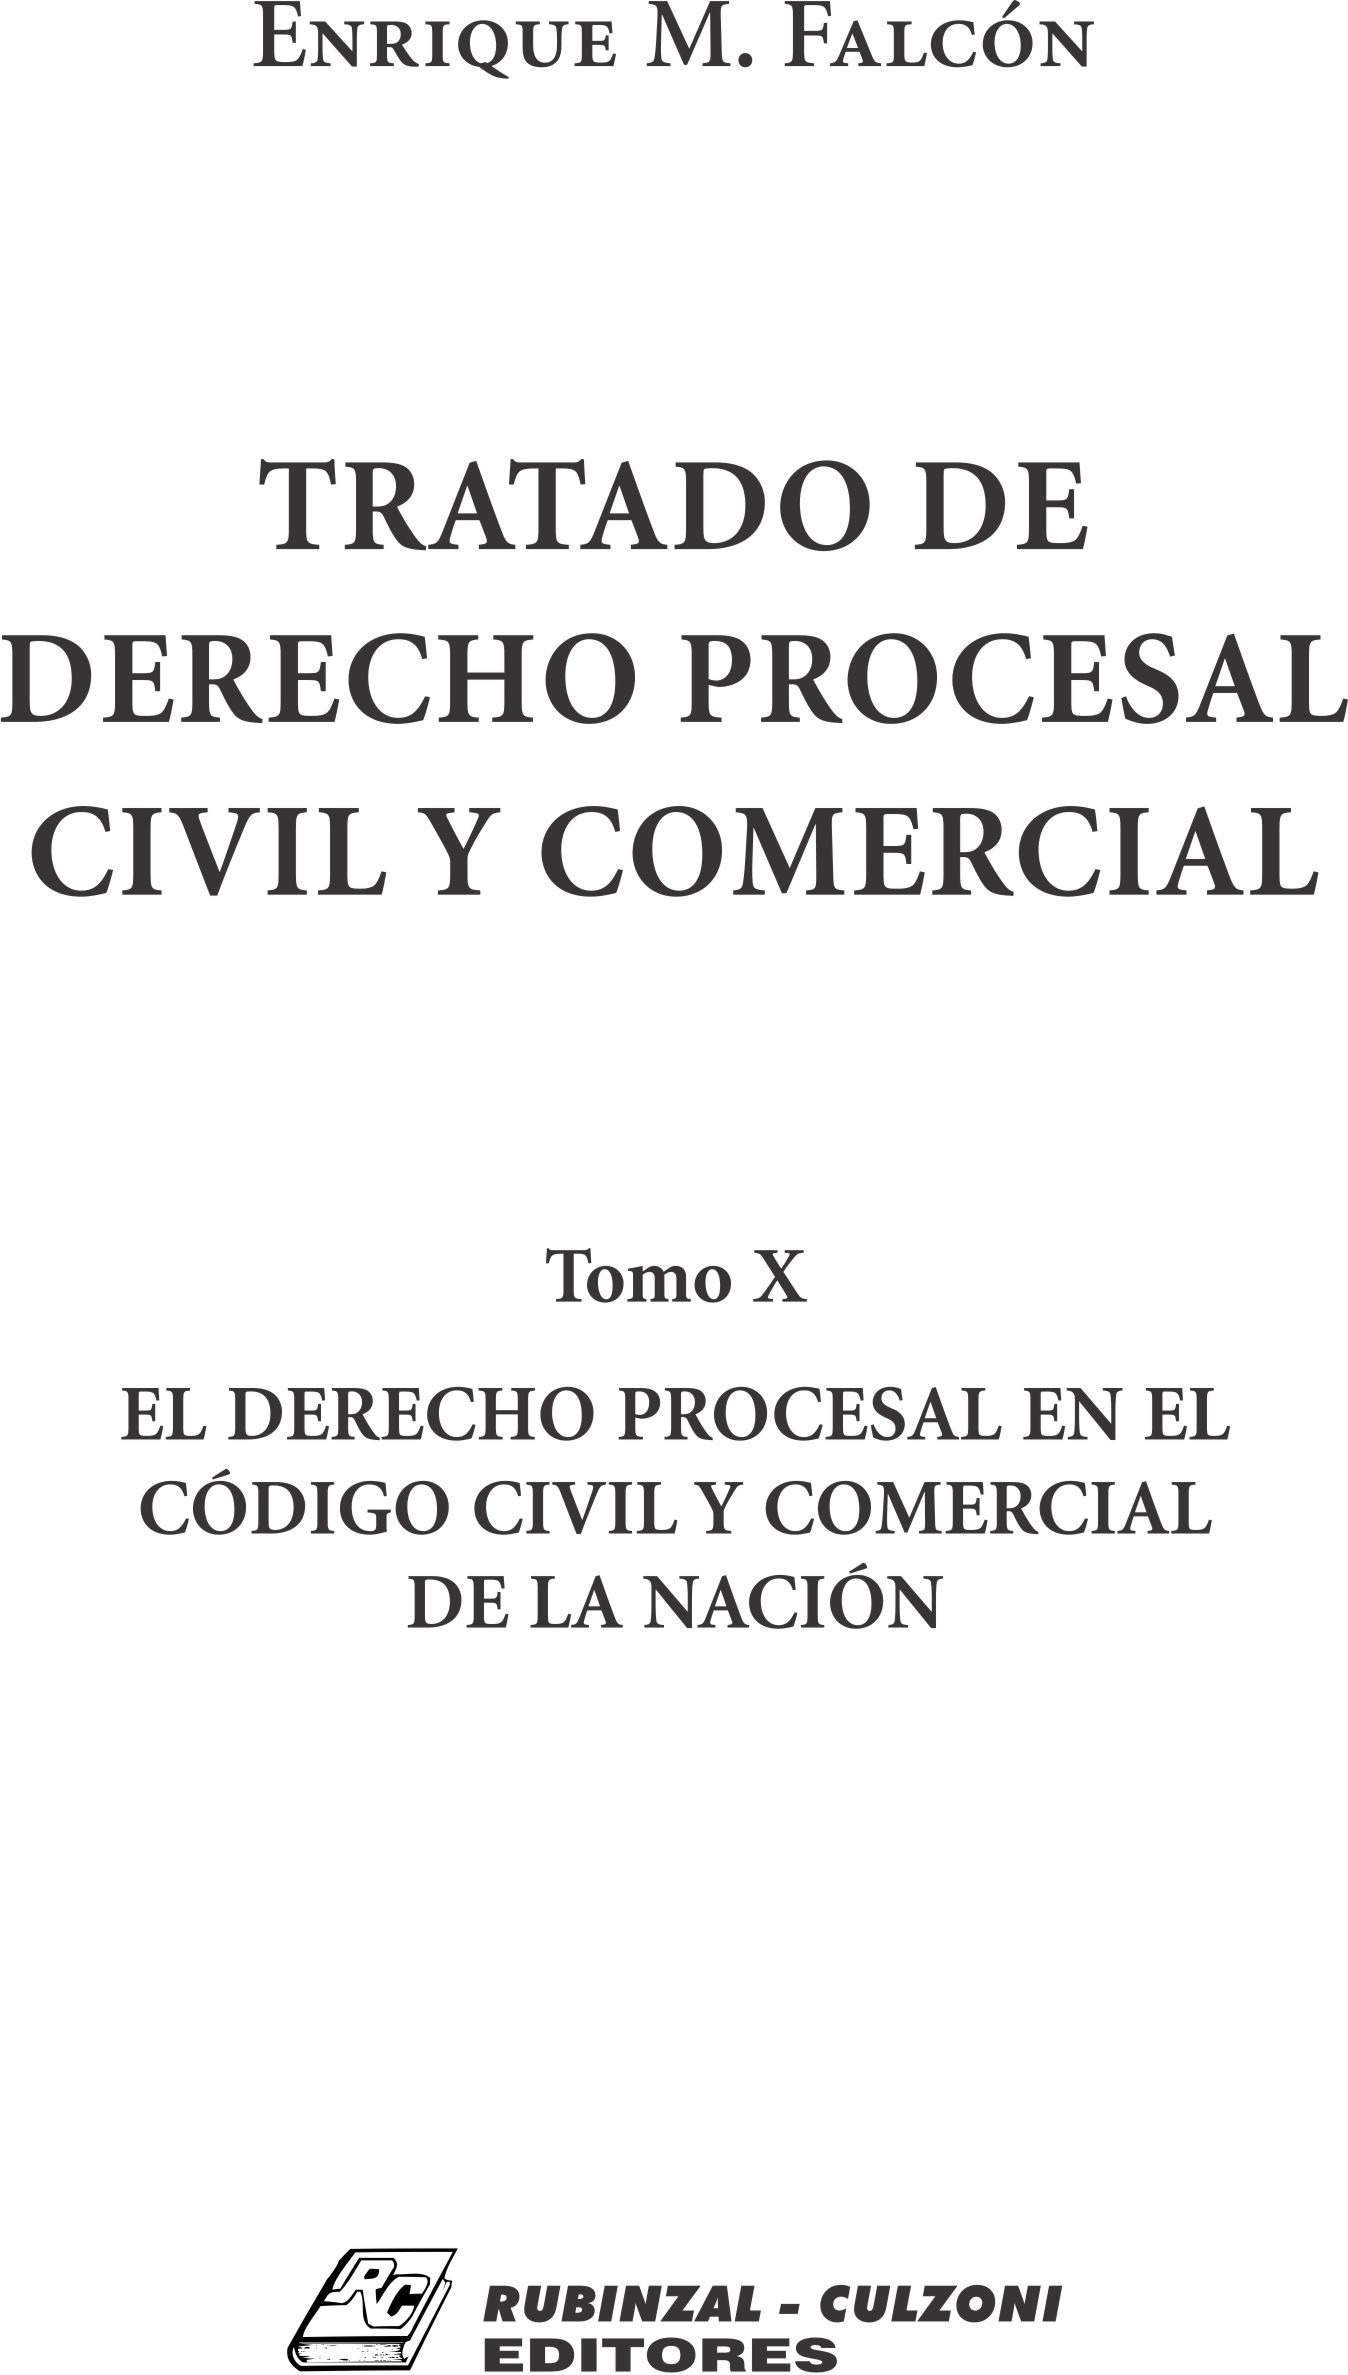 Tratado de Derecho Procesal Civil y Comercial